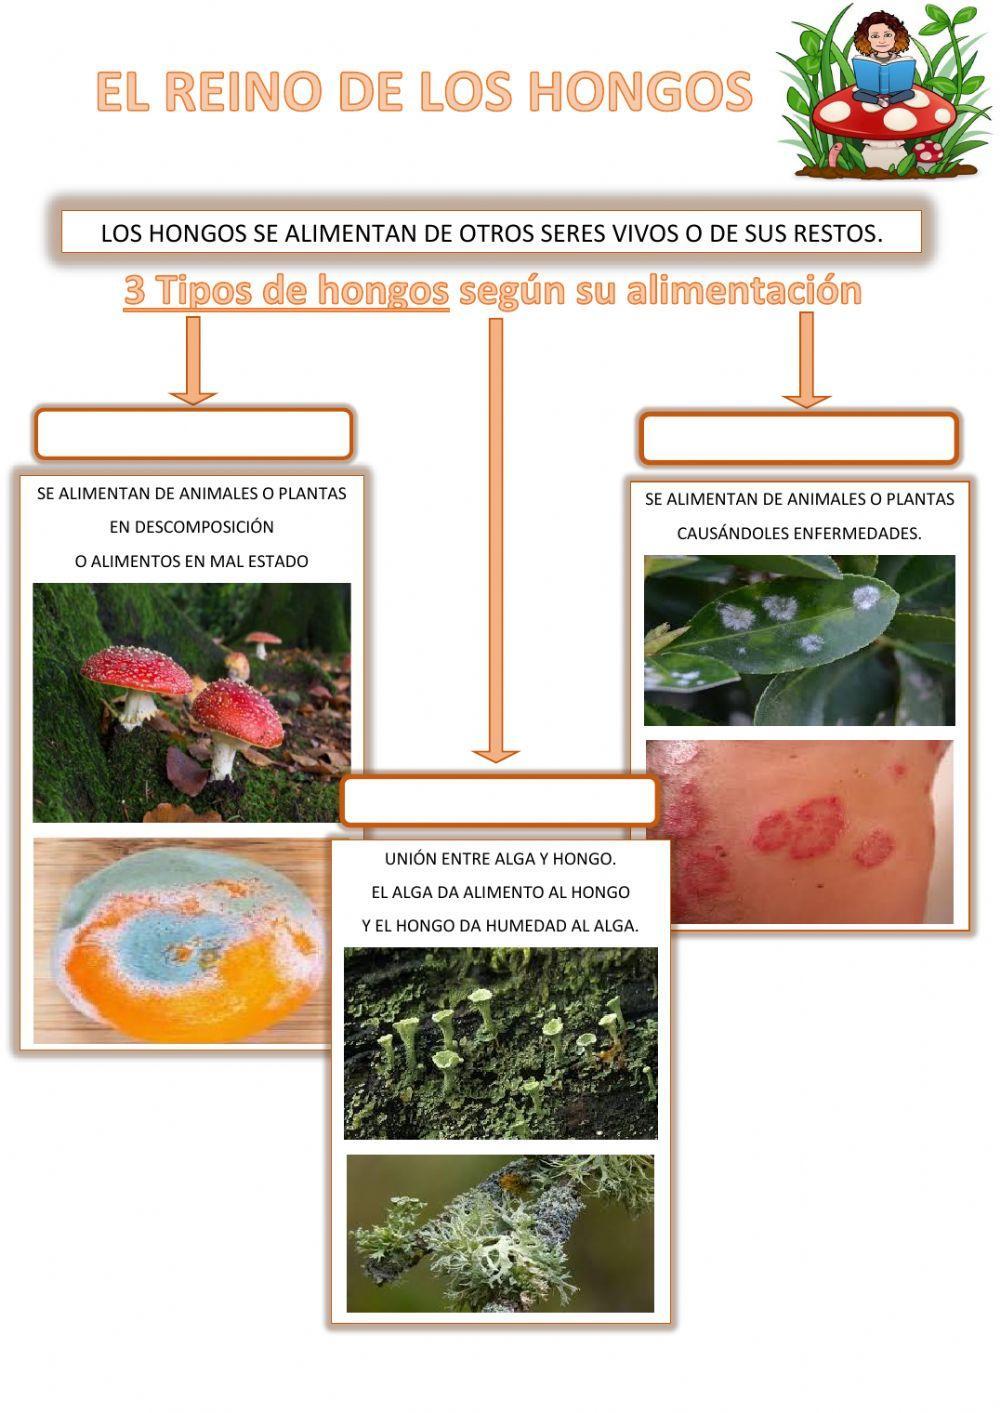 Tipos de hongos según alimentación